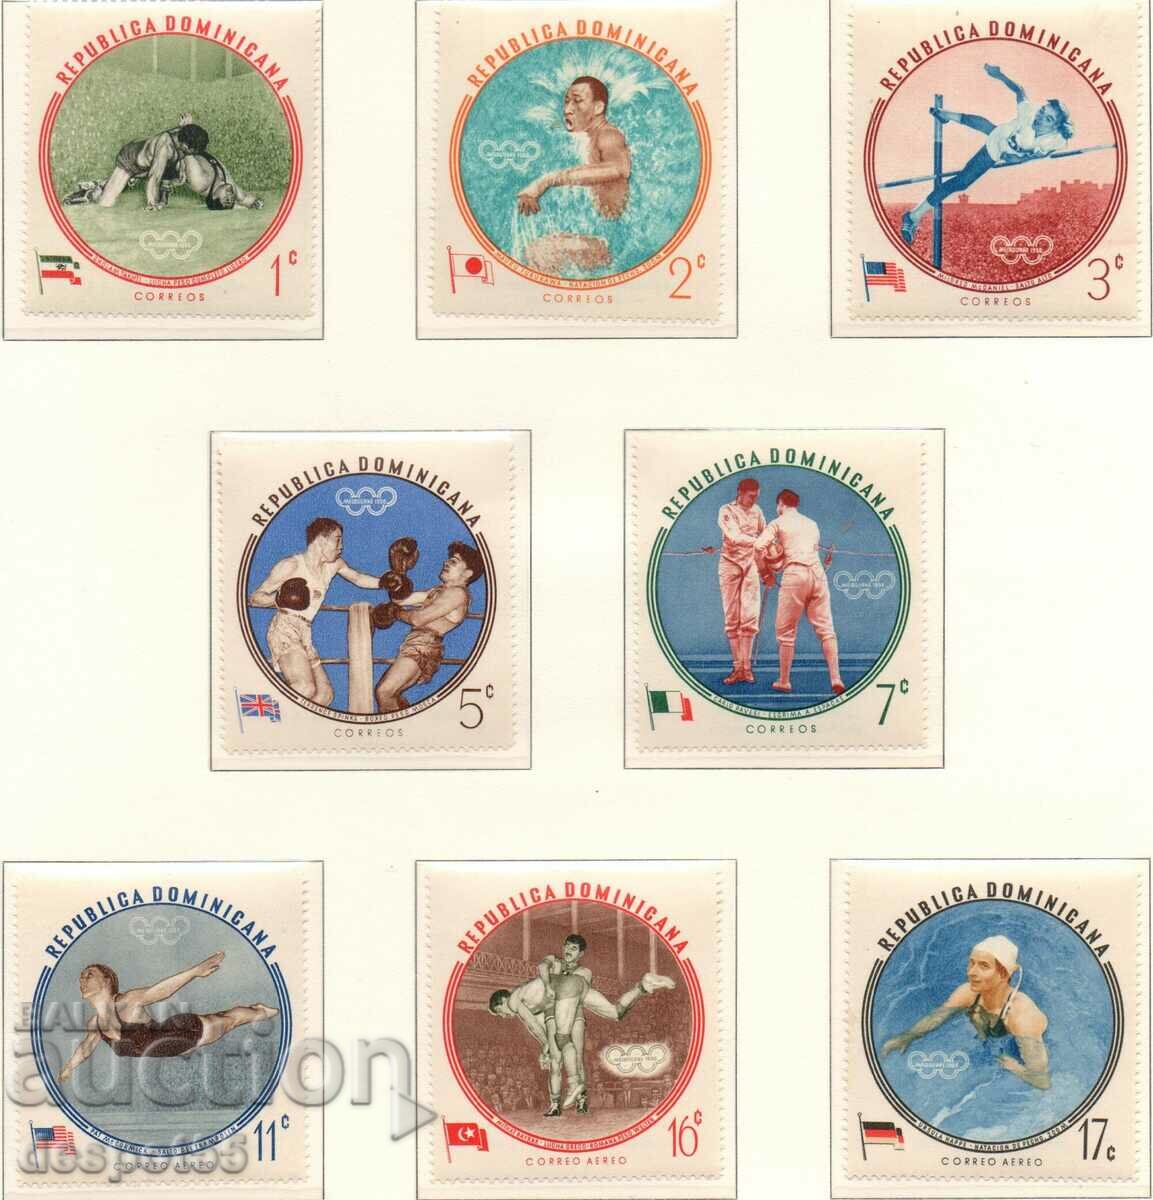 1960. Δομινικανή Δημοκρατία. Ολυμπιακοί Αγώνες - Μελβούρνη. Νικητές.